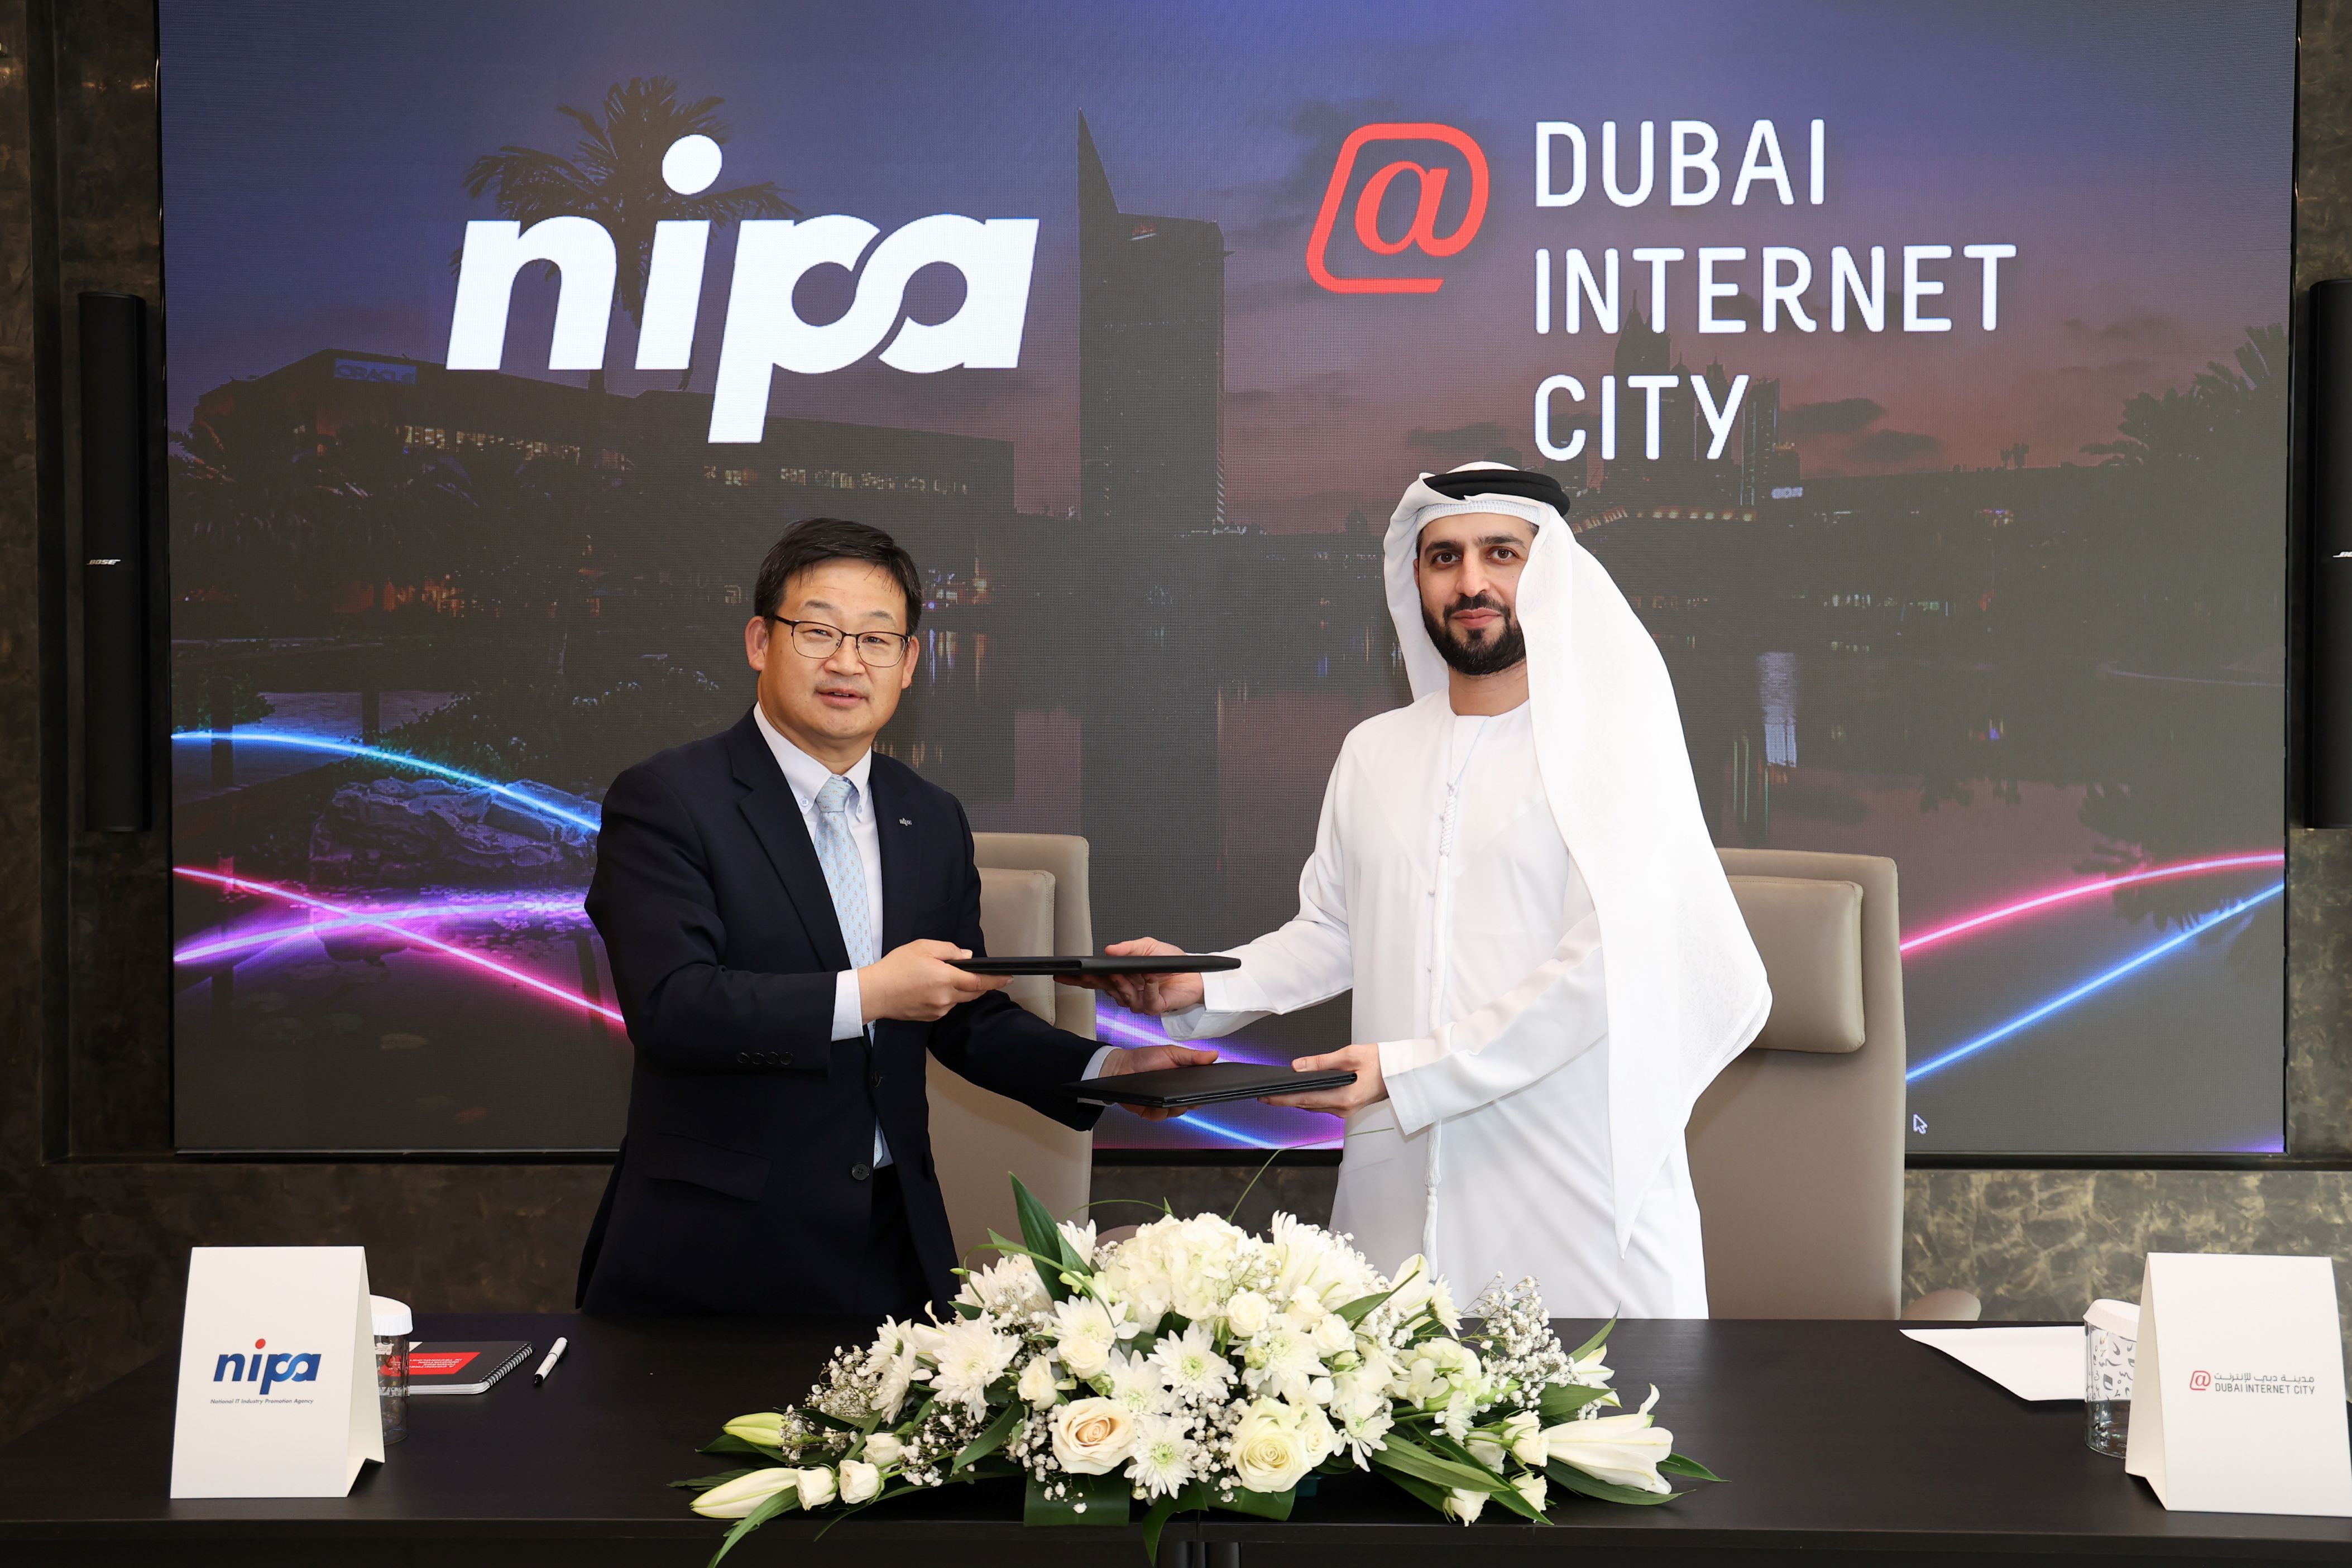 وقعت مدينة دبي للإنترنت والوكالة الوطنية الكورية لتنمية صناعة المعلومات مذكرة تفاهم